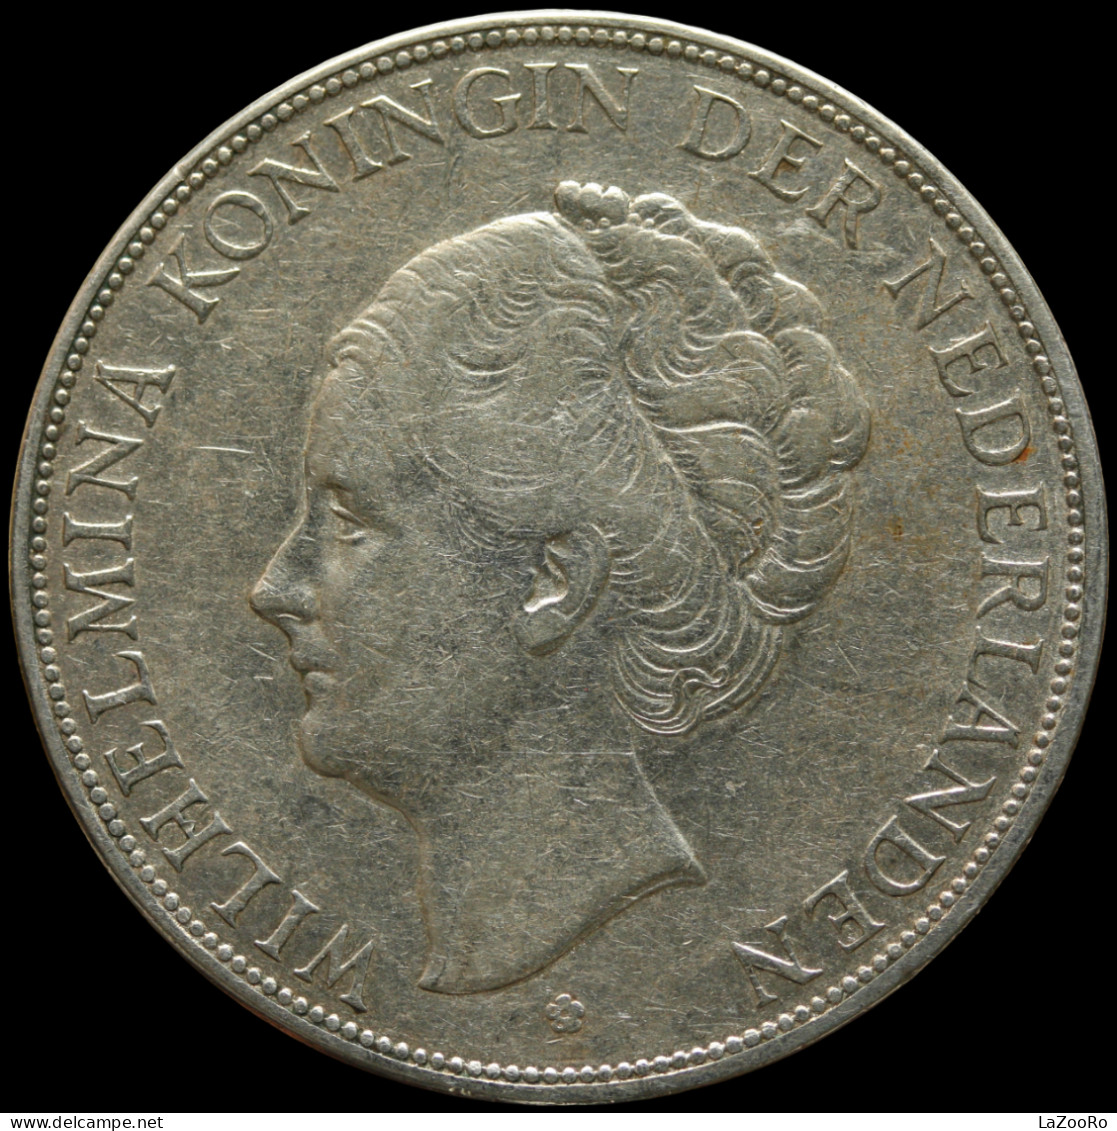 LaZooRo: Netherlands 2 1/2 Gulden 1929 XF - Silver - 2 1/2 Gulden